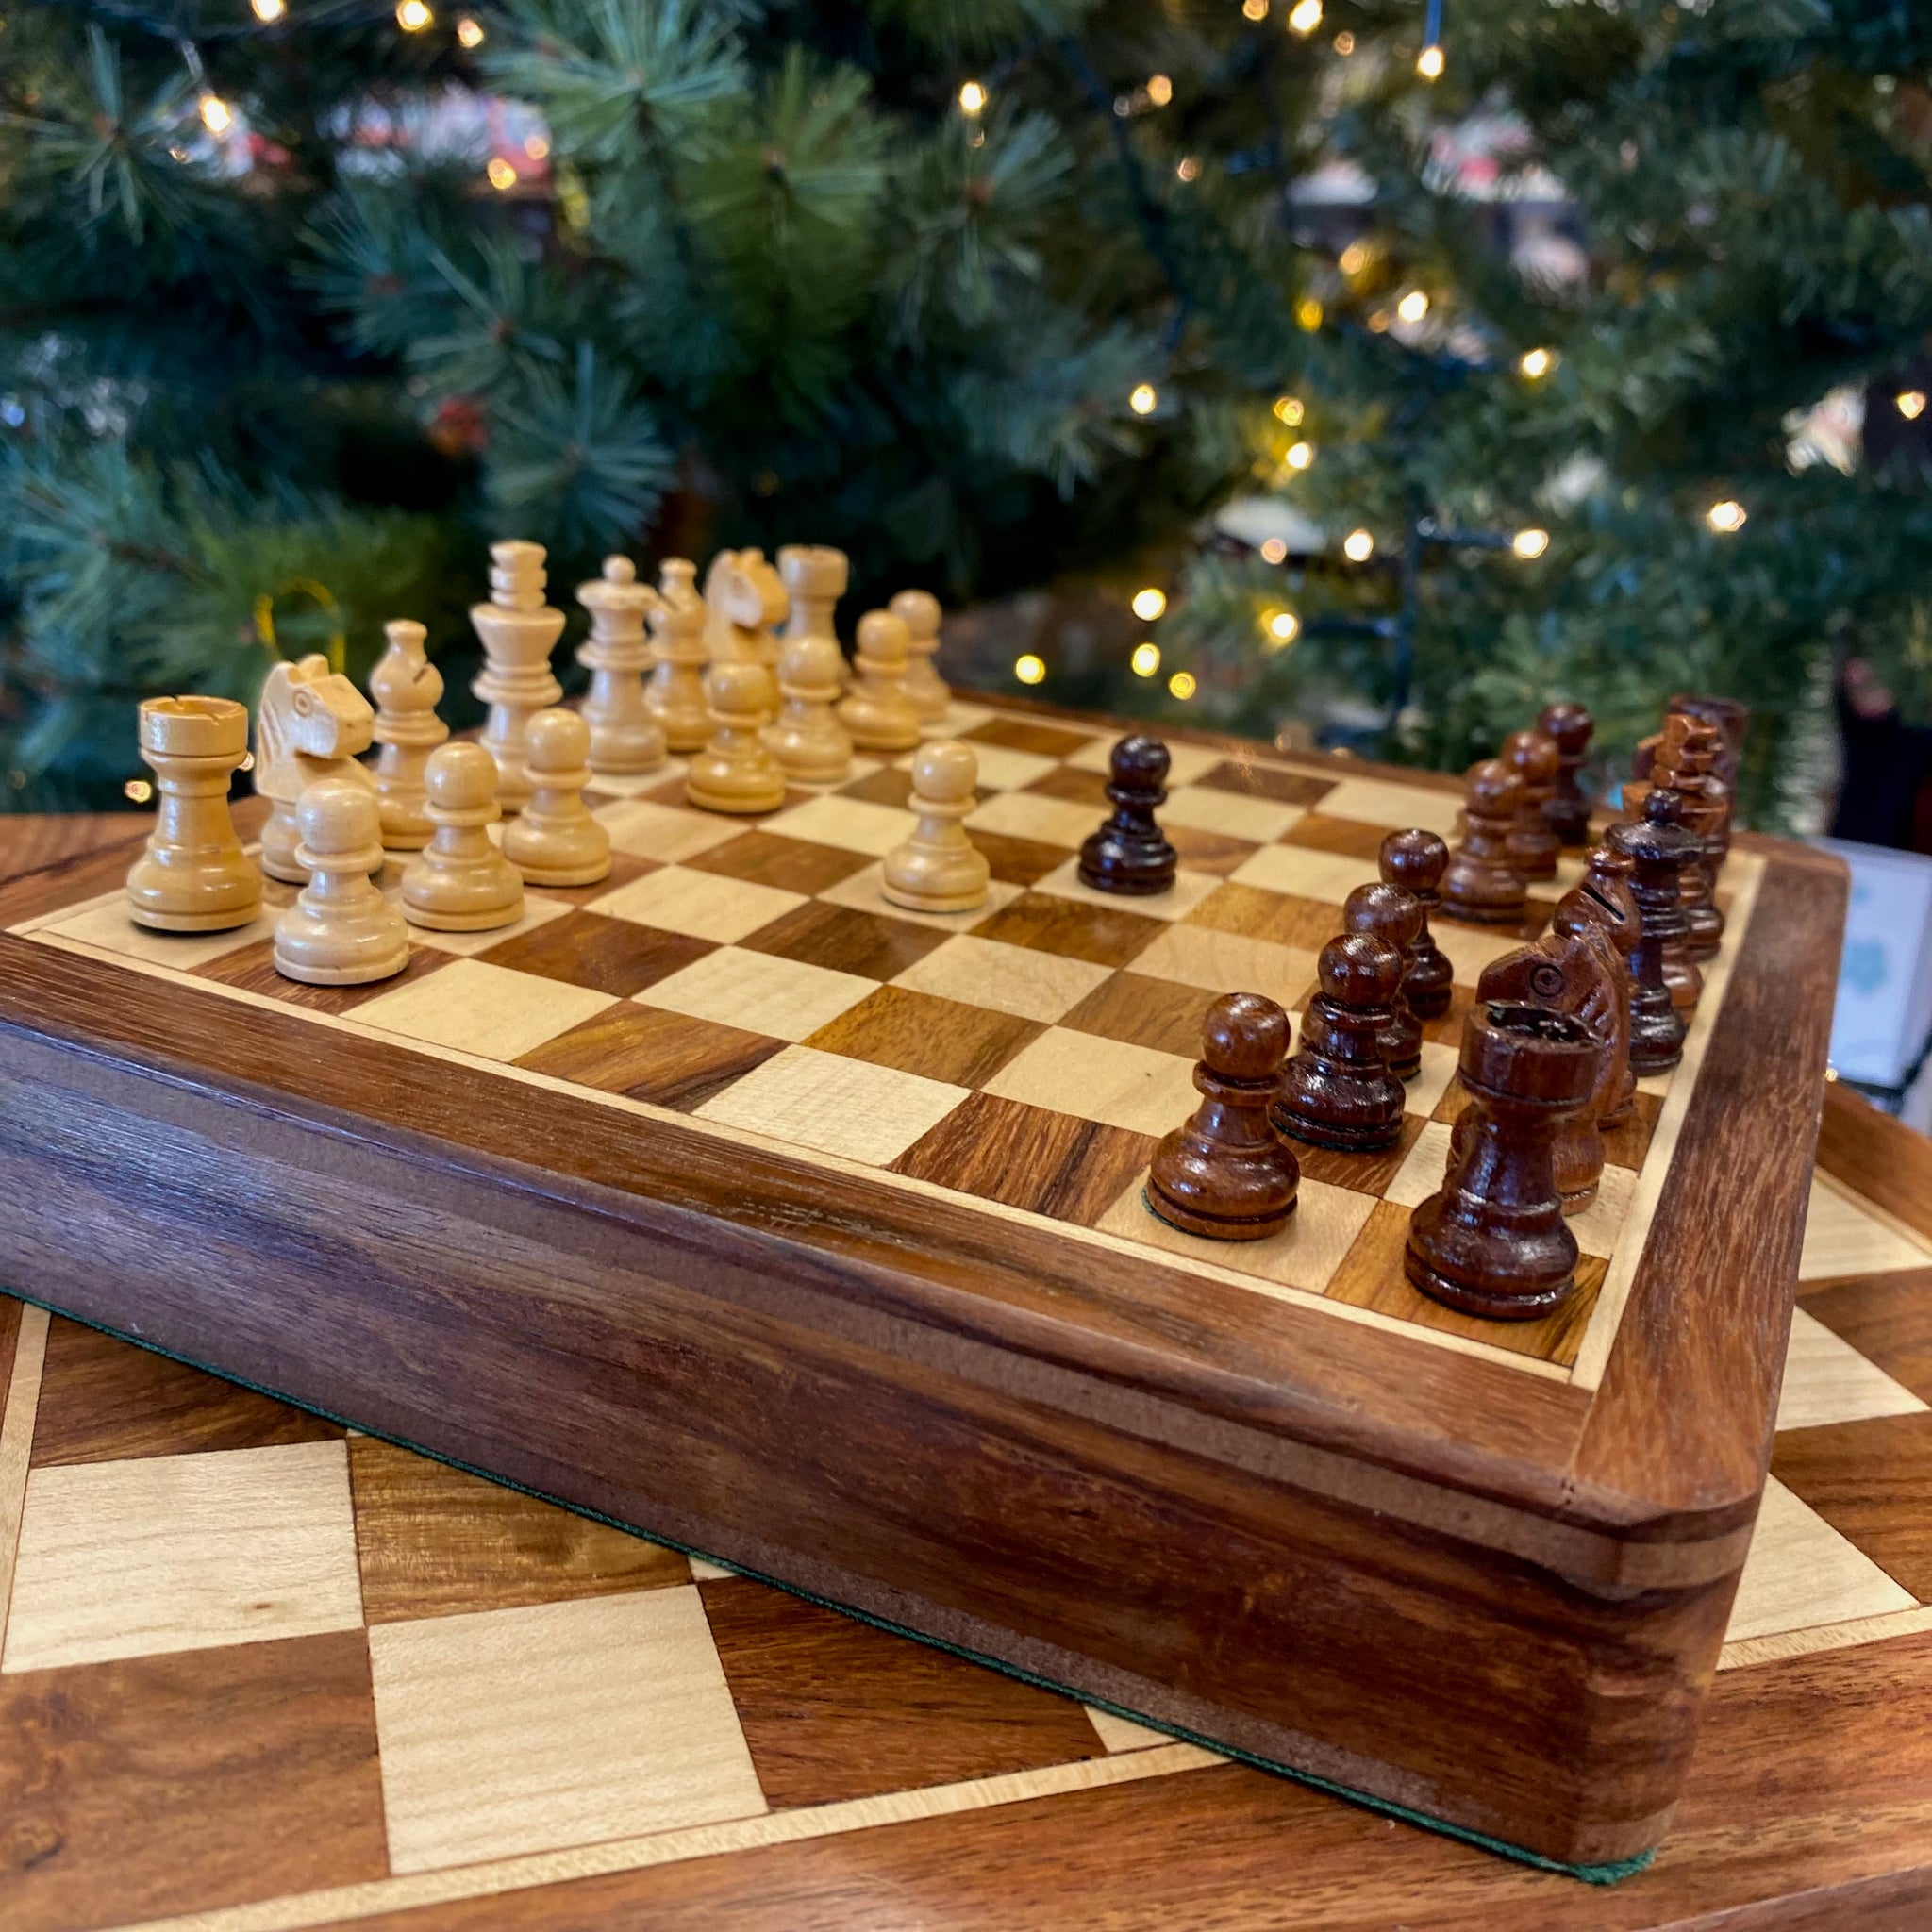 Wooden Magnetic Chess Board – StricklandandHolt